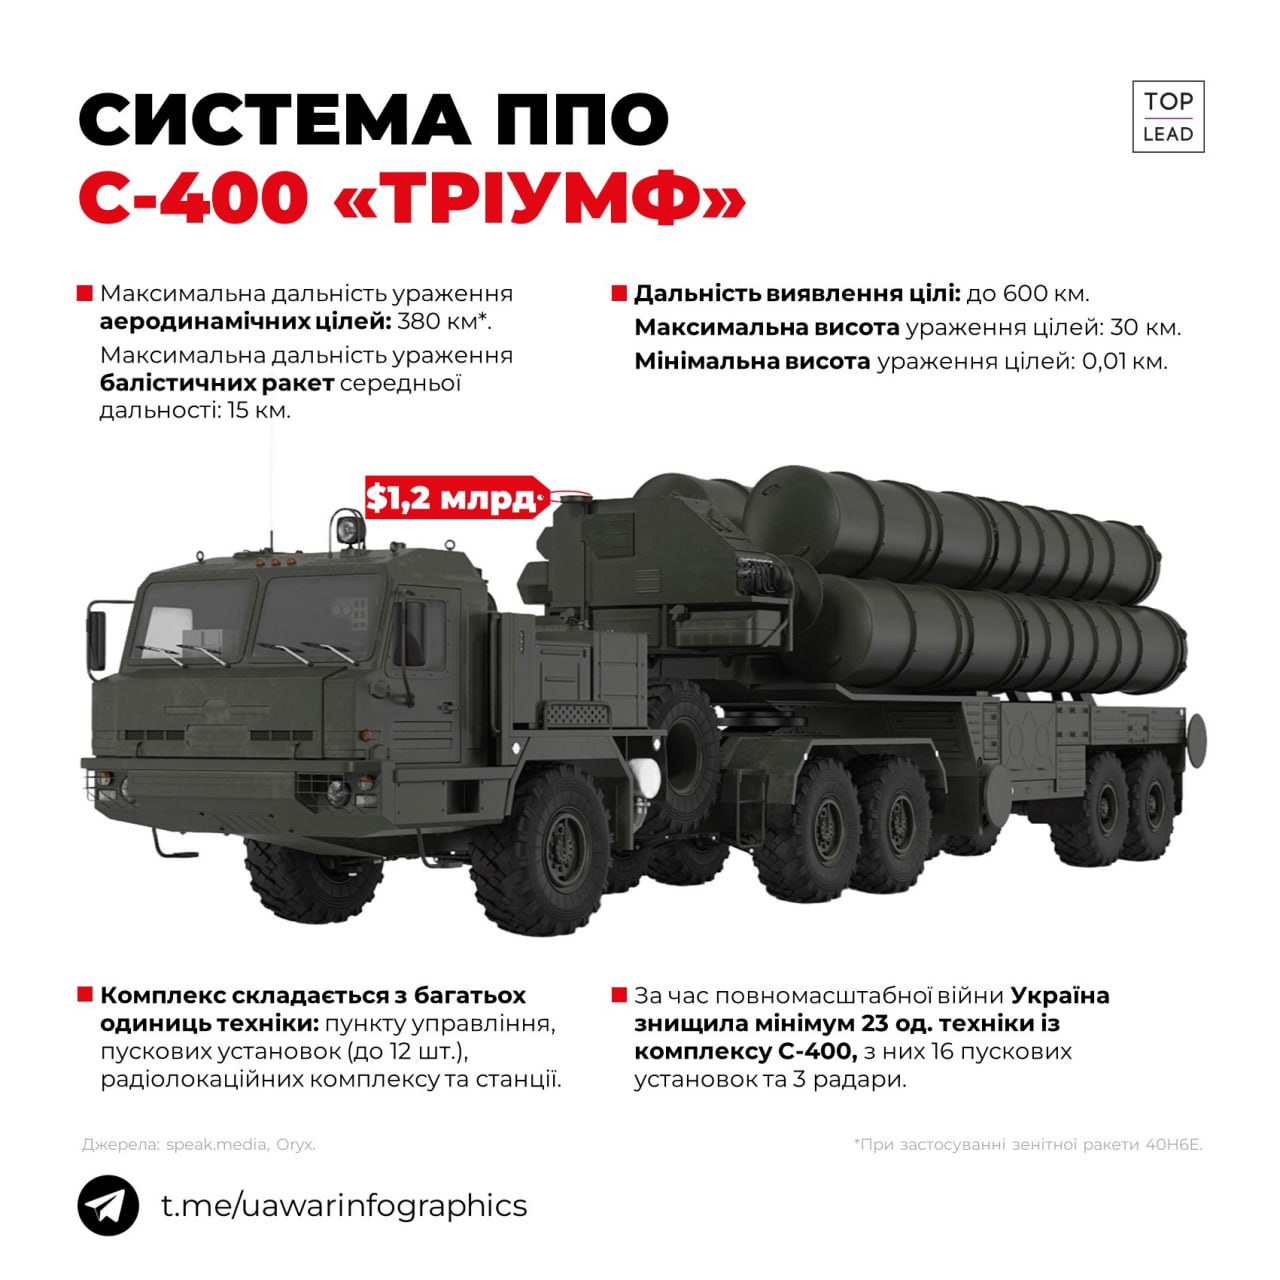 Мінімум 16 пускових установок системи ППО С-400 знищили Сили оборони України